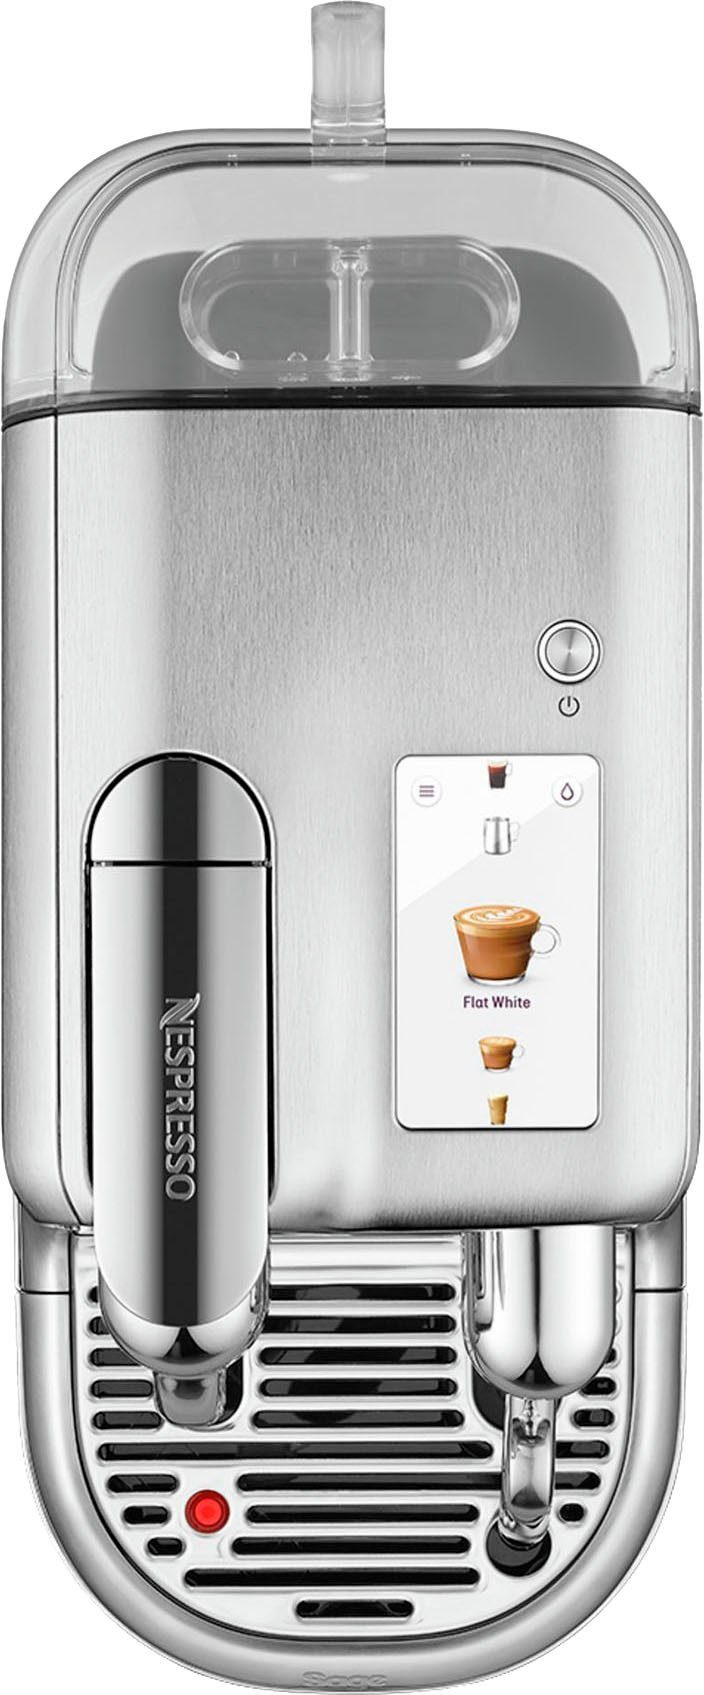 14 Creatista SNE900 mit Pro Nespresso Kapseln Willkommenspaket mit Edelstahl-Milchkanne, Kapselmaschine inkl.